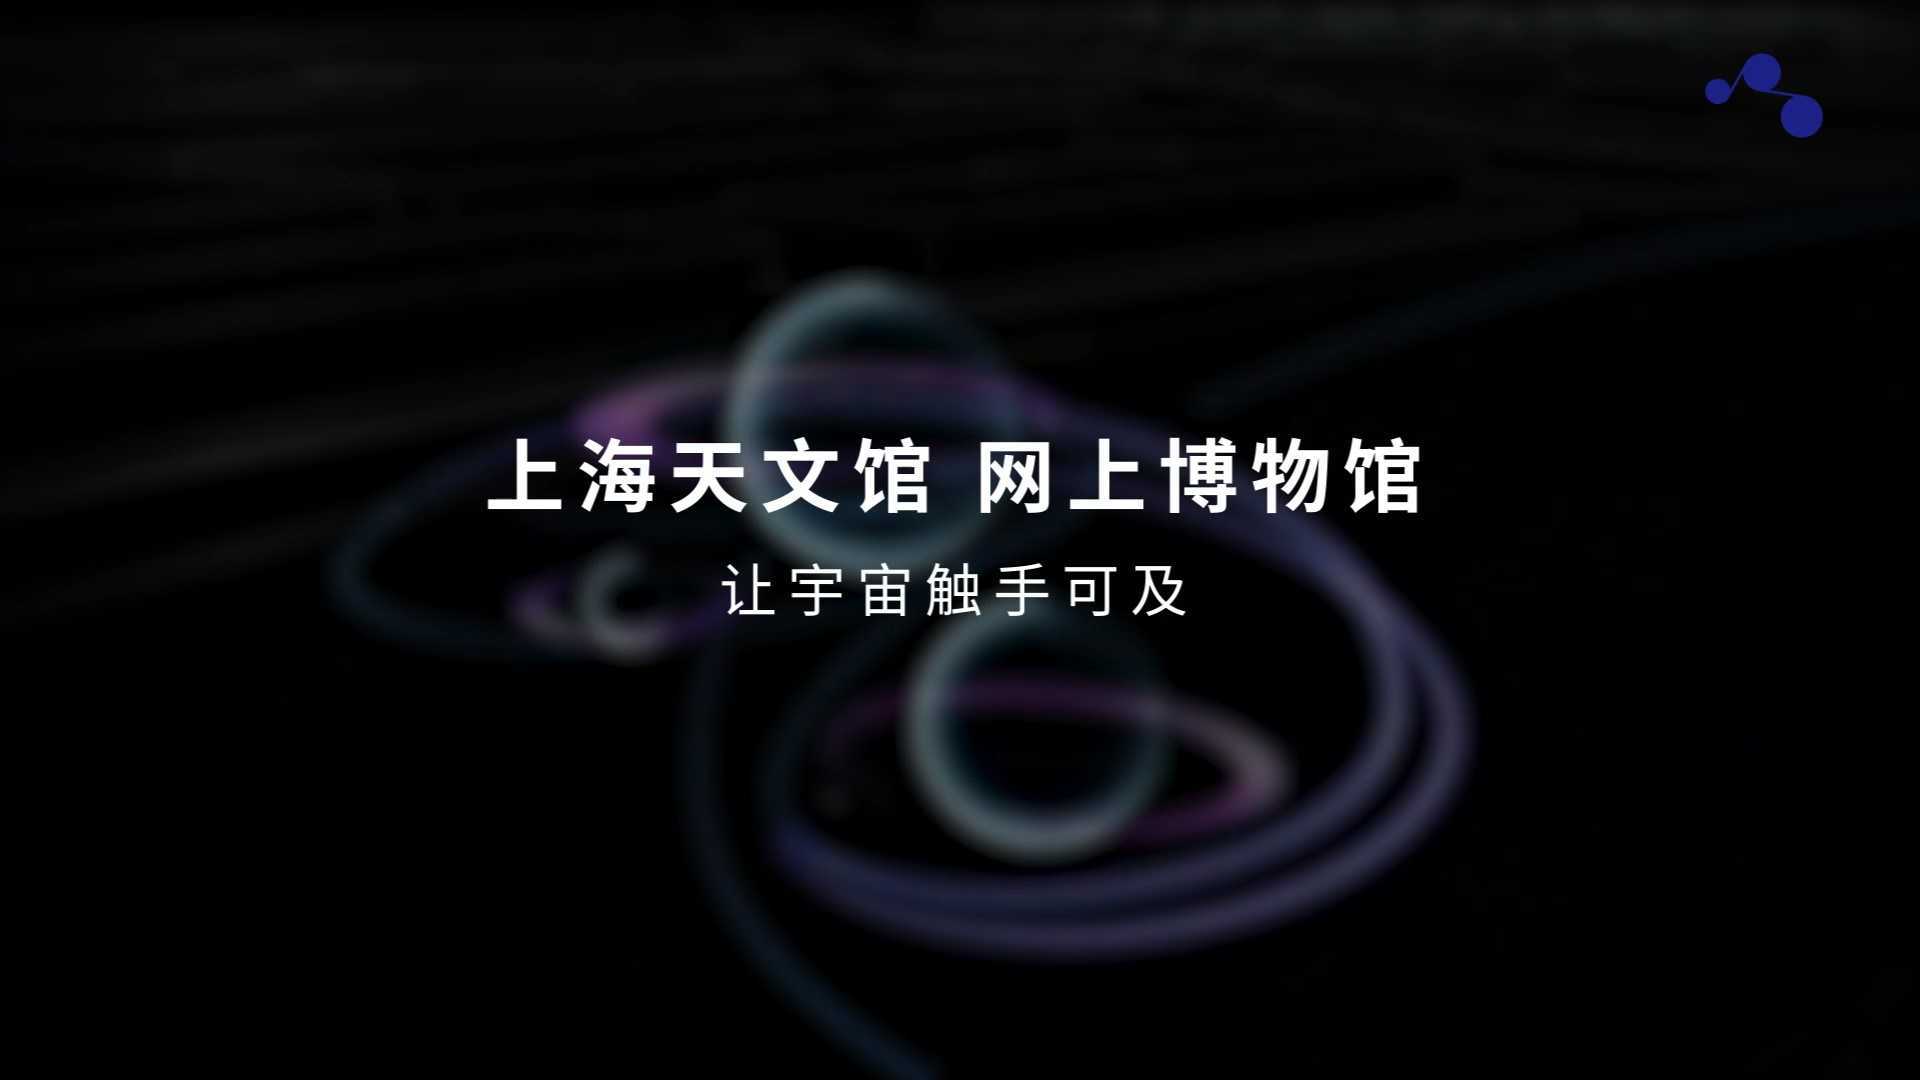 上海天文馆 网上博物馆——智慧让宇宙触手可及